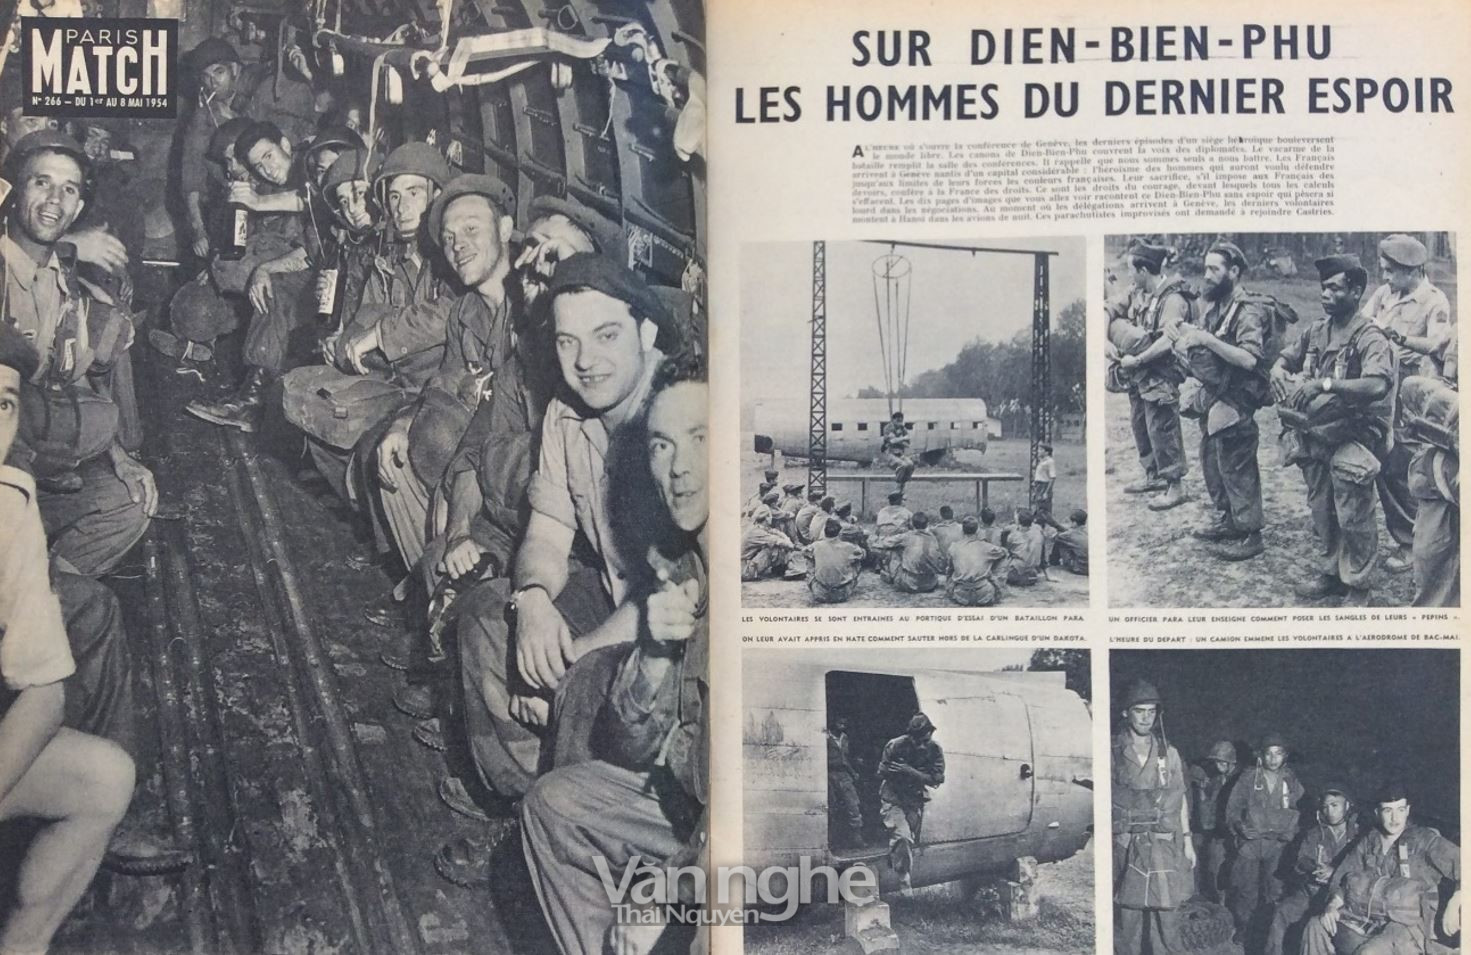 Một bài báo trên tờ Paris Match (số ra ngày 8 tháng 5 năm 1954). Ở Điện Biên Phủ, những người lính của tia hi vọng cuối cùng